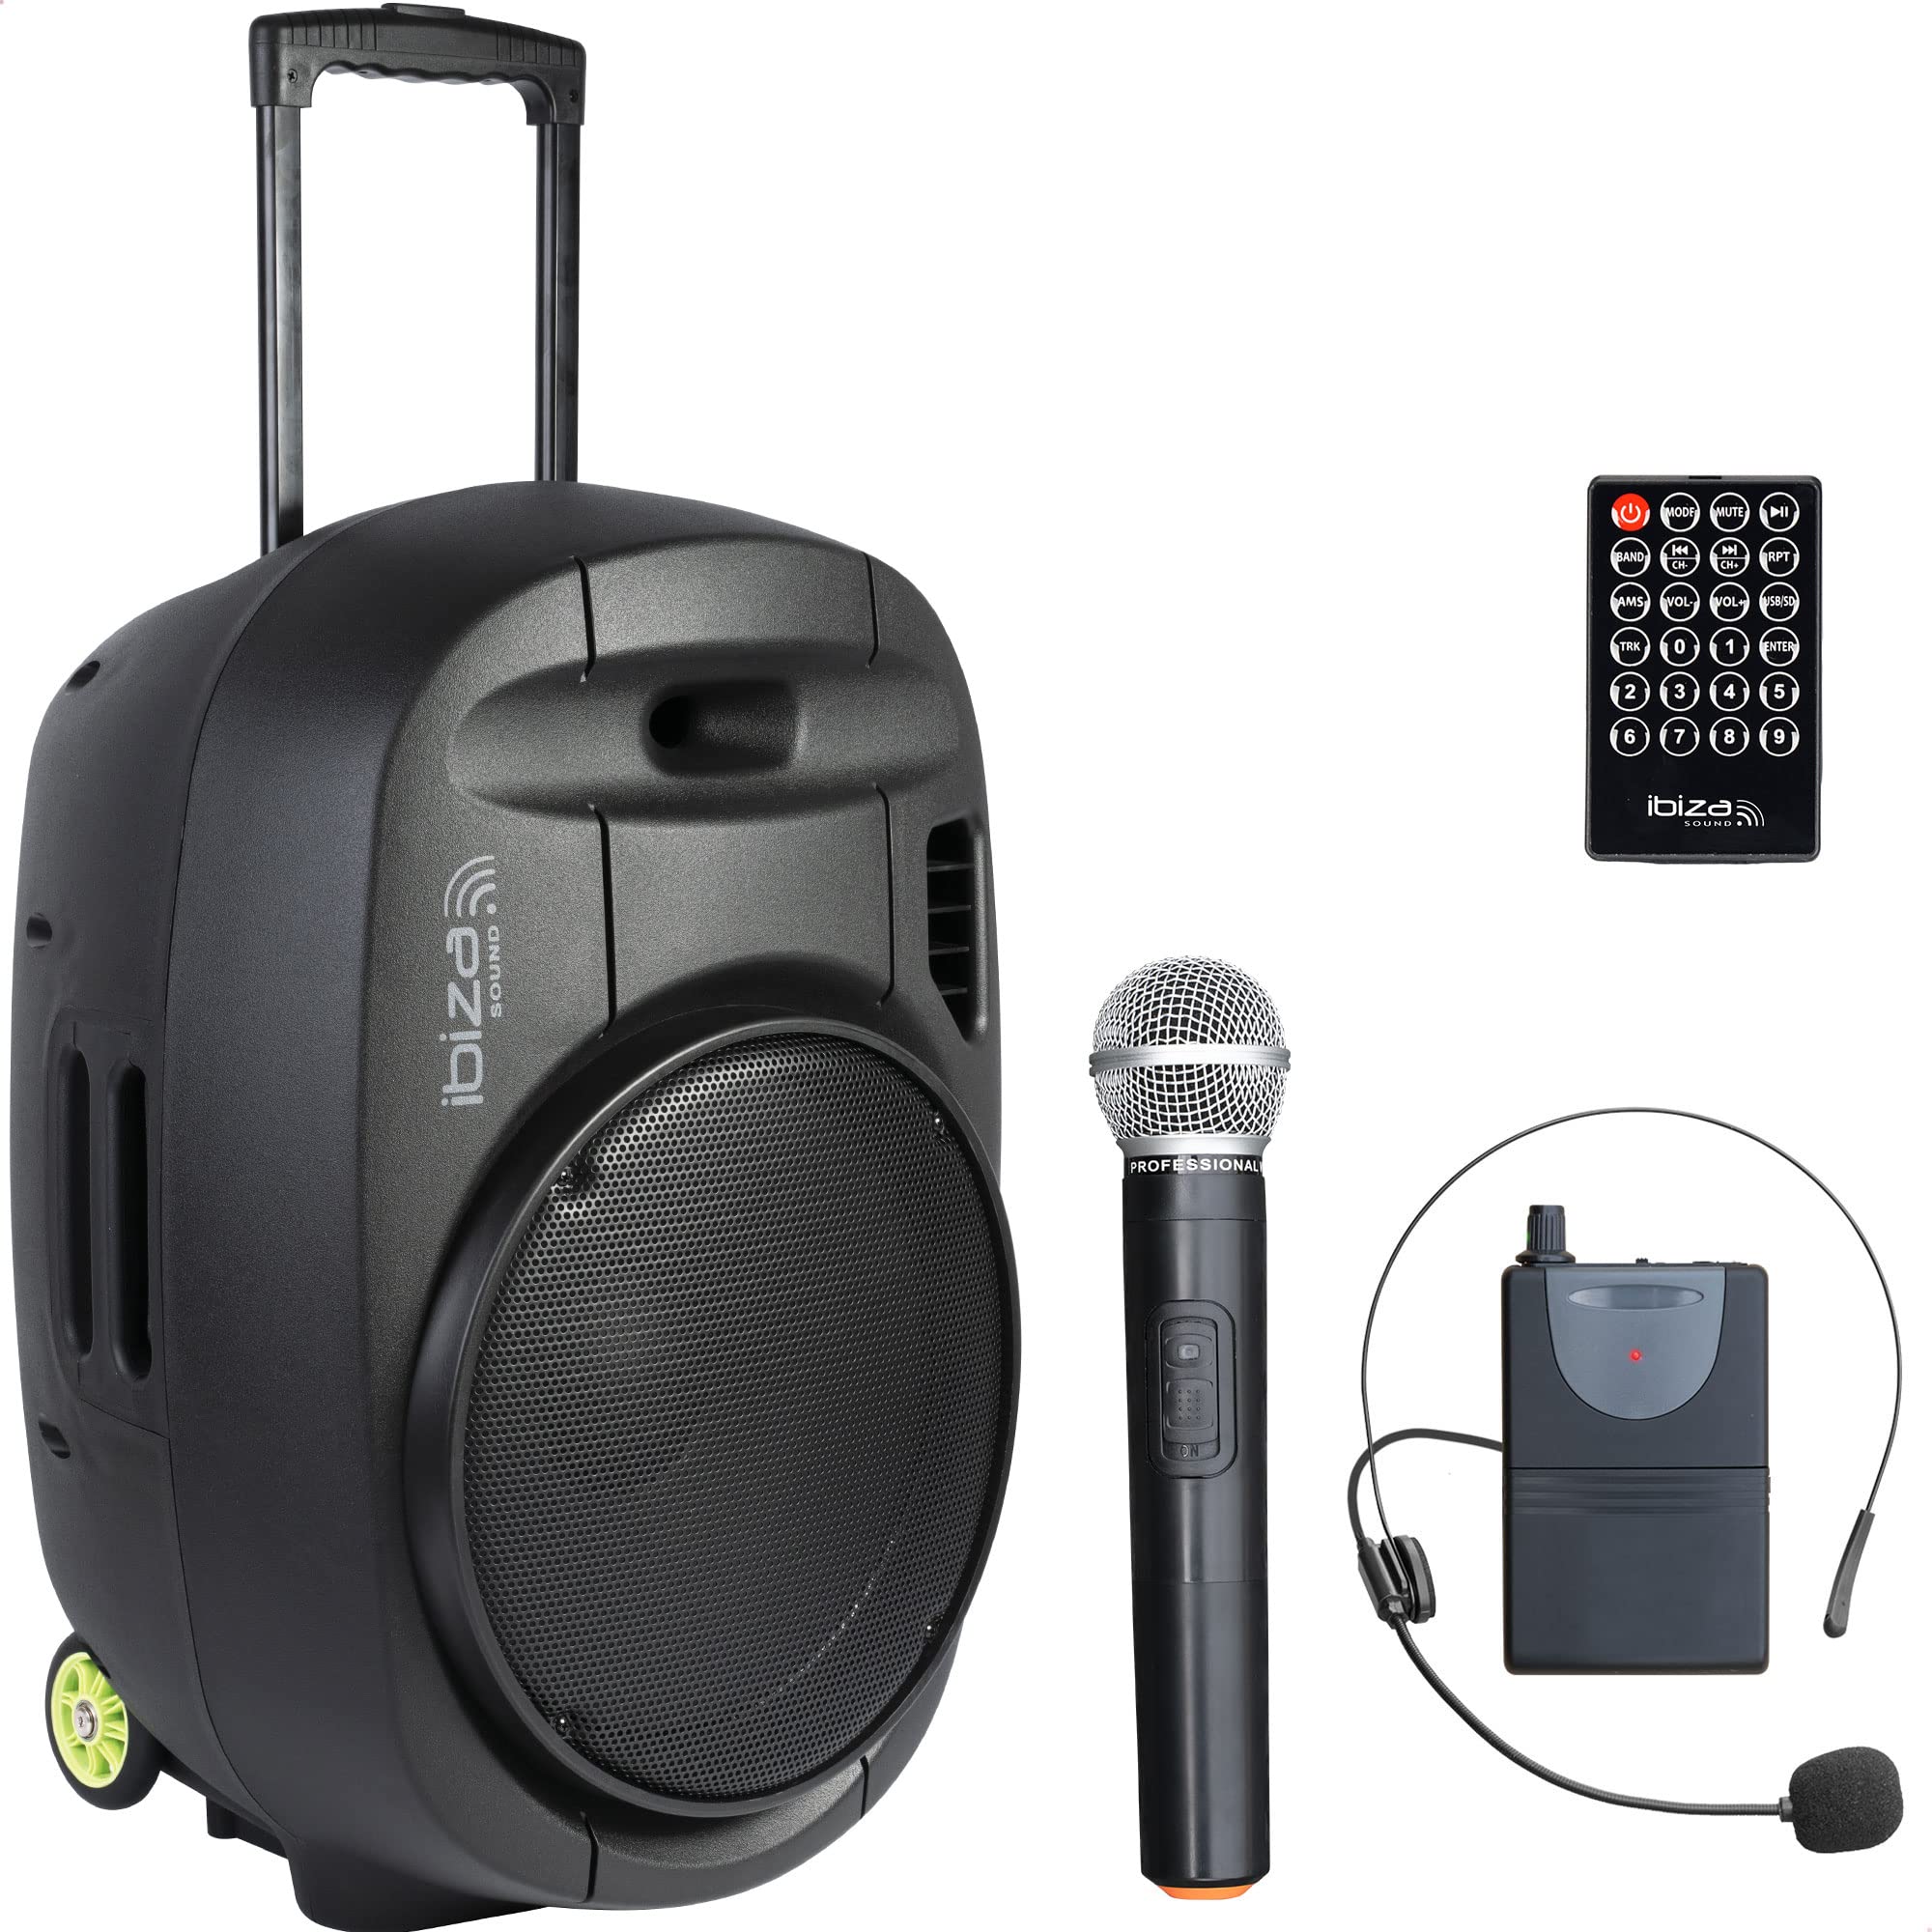 PORT15VHF-MKII - IBIZA - Tragbarer Lautsprecher 15"/800W MAX mit 2 Mikrofonen (VHF), Fernbedienung und Zubehörtasche - Bluetooth, USB, SD - 5-7 Std. Wiedergabezeit